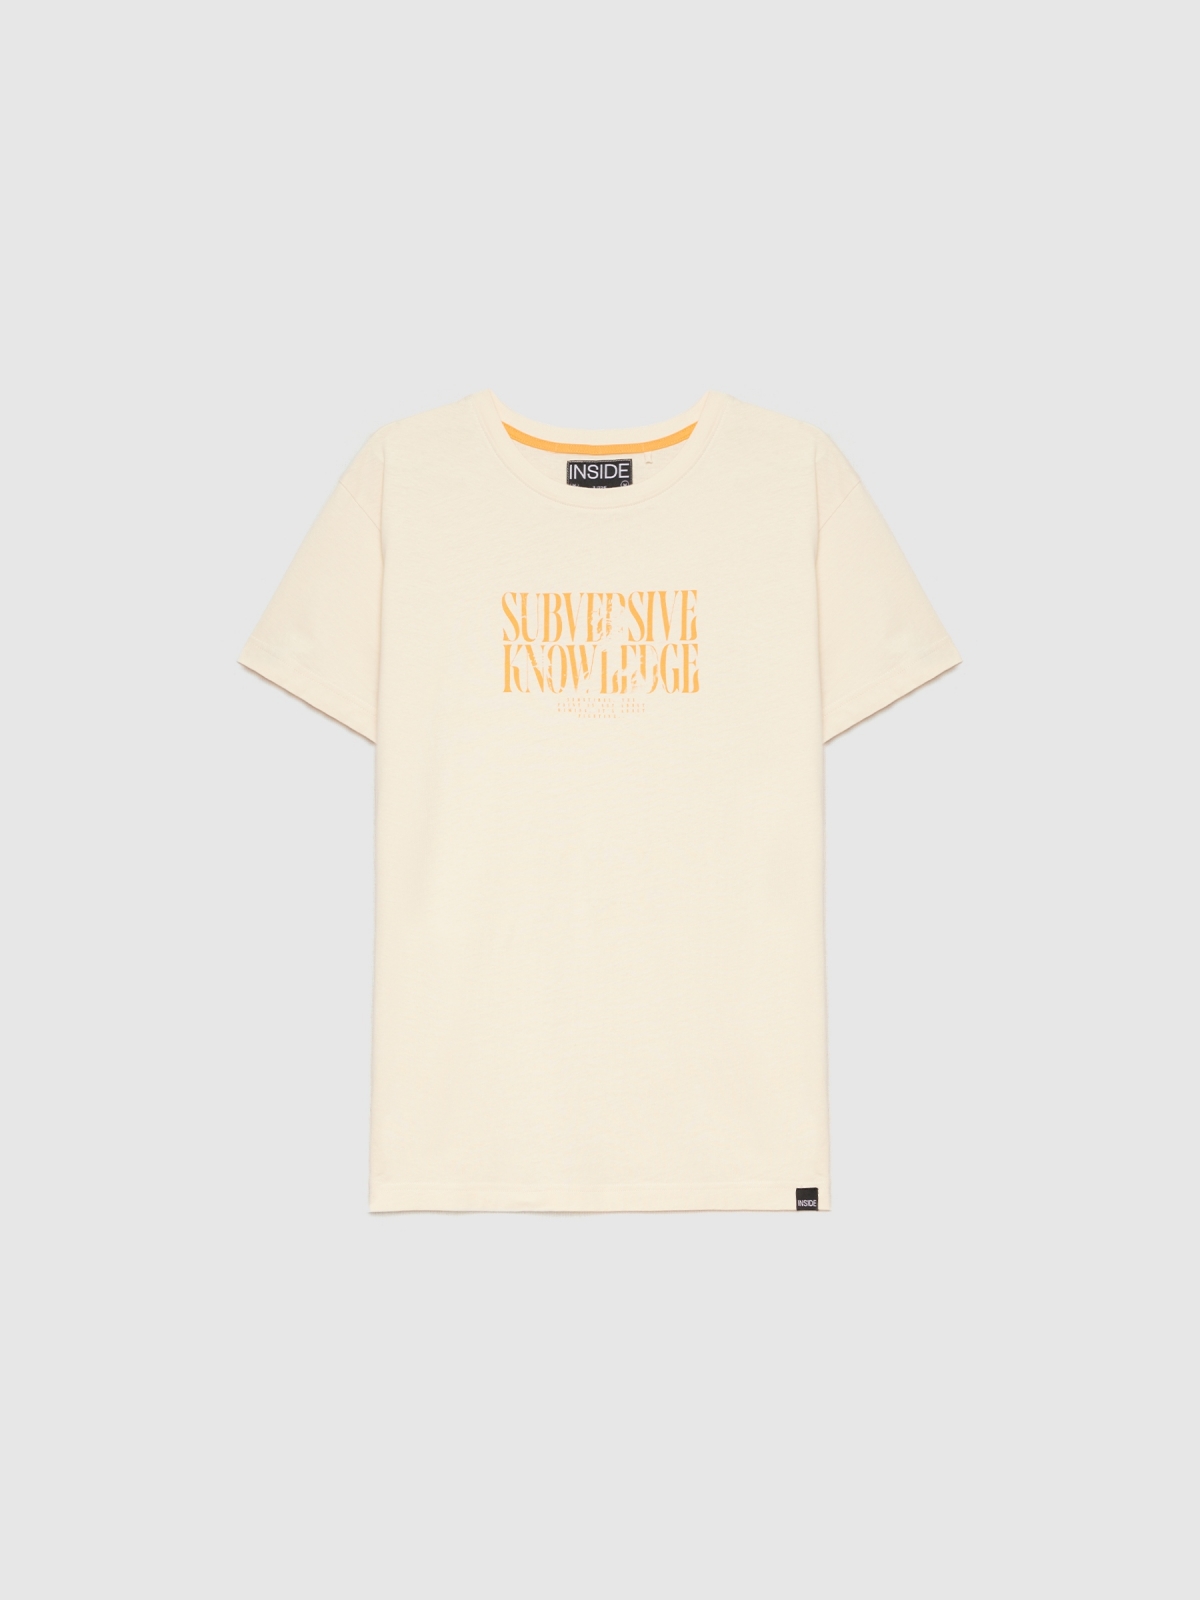  Camiseta texto minimalista arena